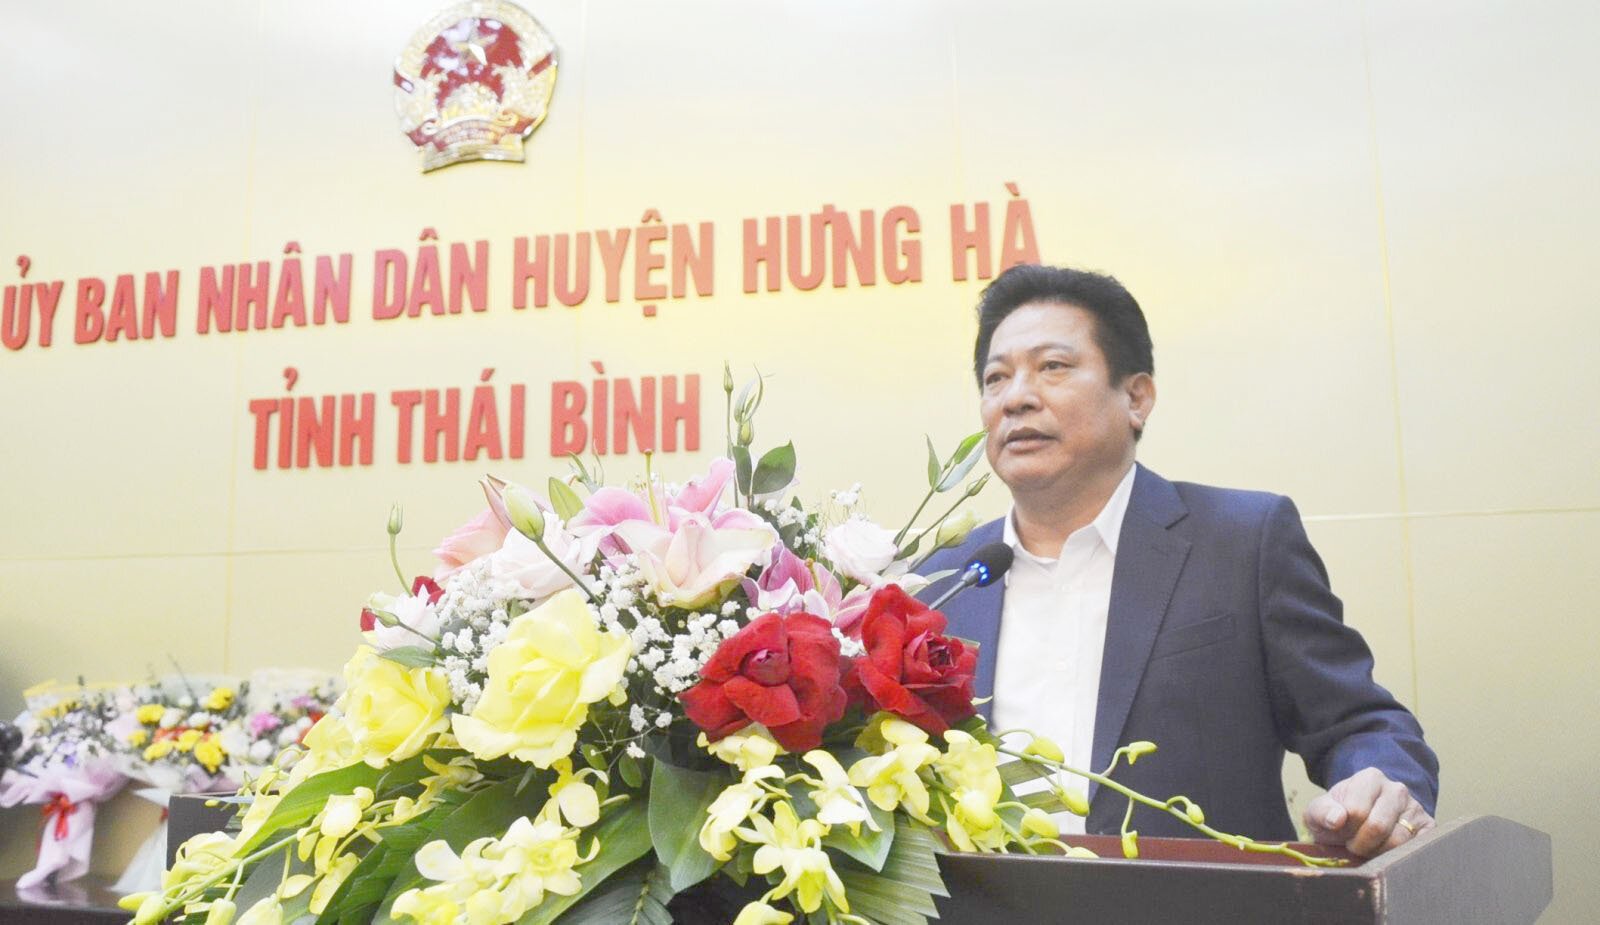 Ông Nguyễn Xuân Dương, Phó Giám đốc Sở Khoa học - Công nghệ tỉnh Thái Bình (nguyên Chủ tịch UBND huyện Hưng Hà) vừa bị bắt giam.